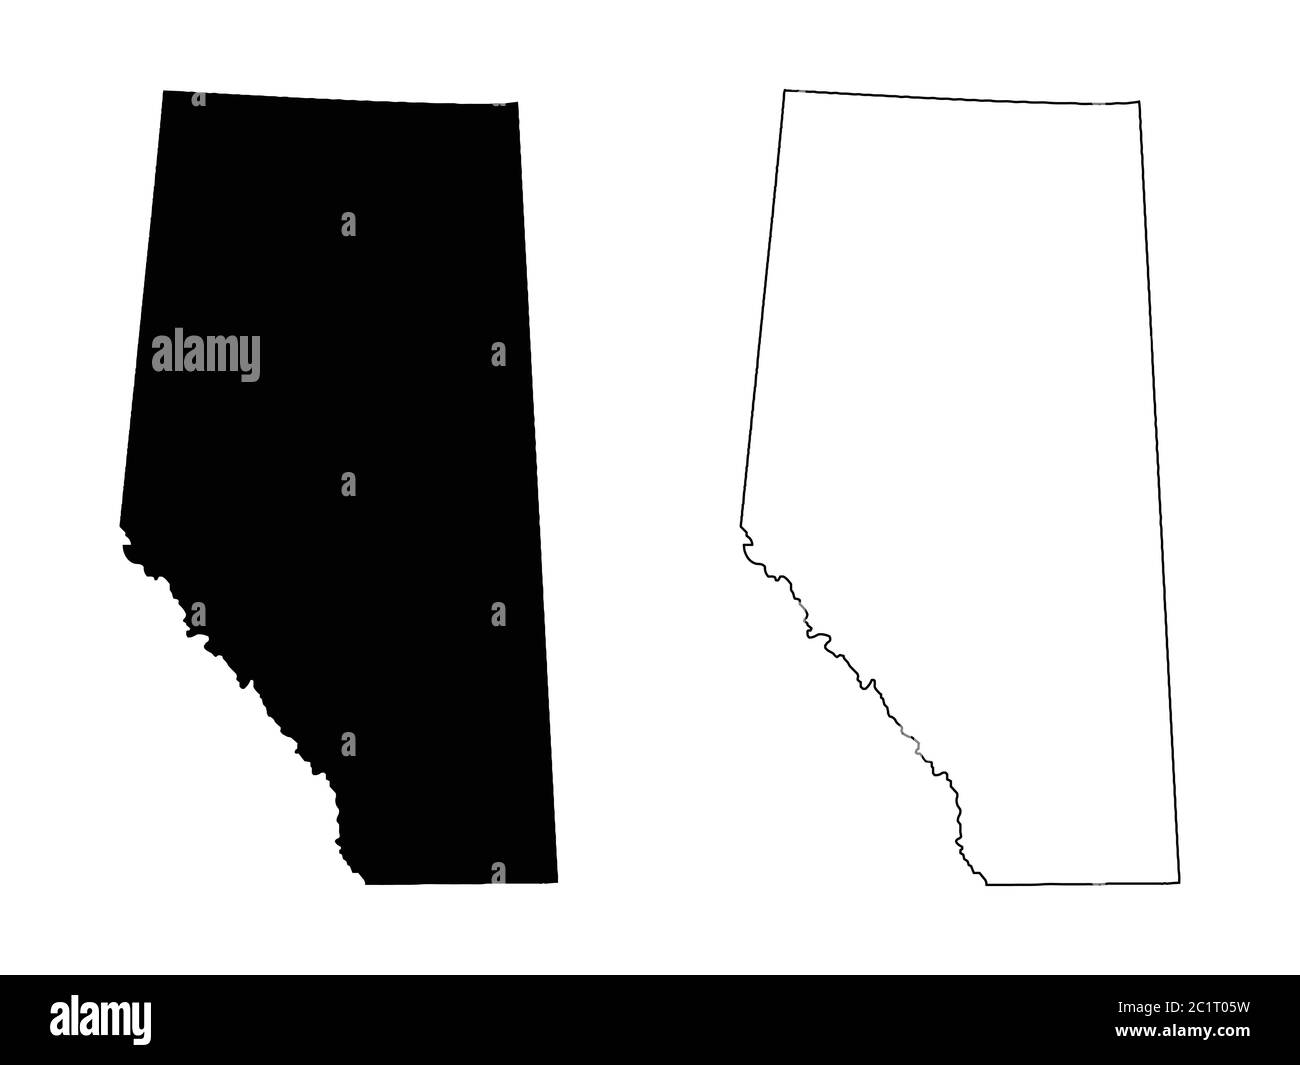 Alberta province et territoire du Canada carte. Illustration et contour noirs. Isolé sur un fond blanc. Vecteur EPS Illustration de Vecteur